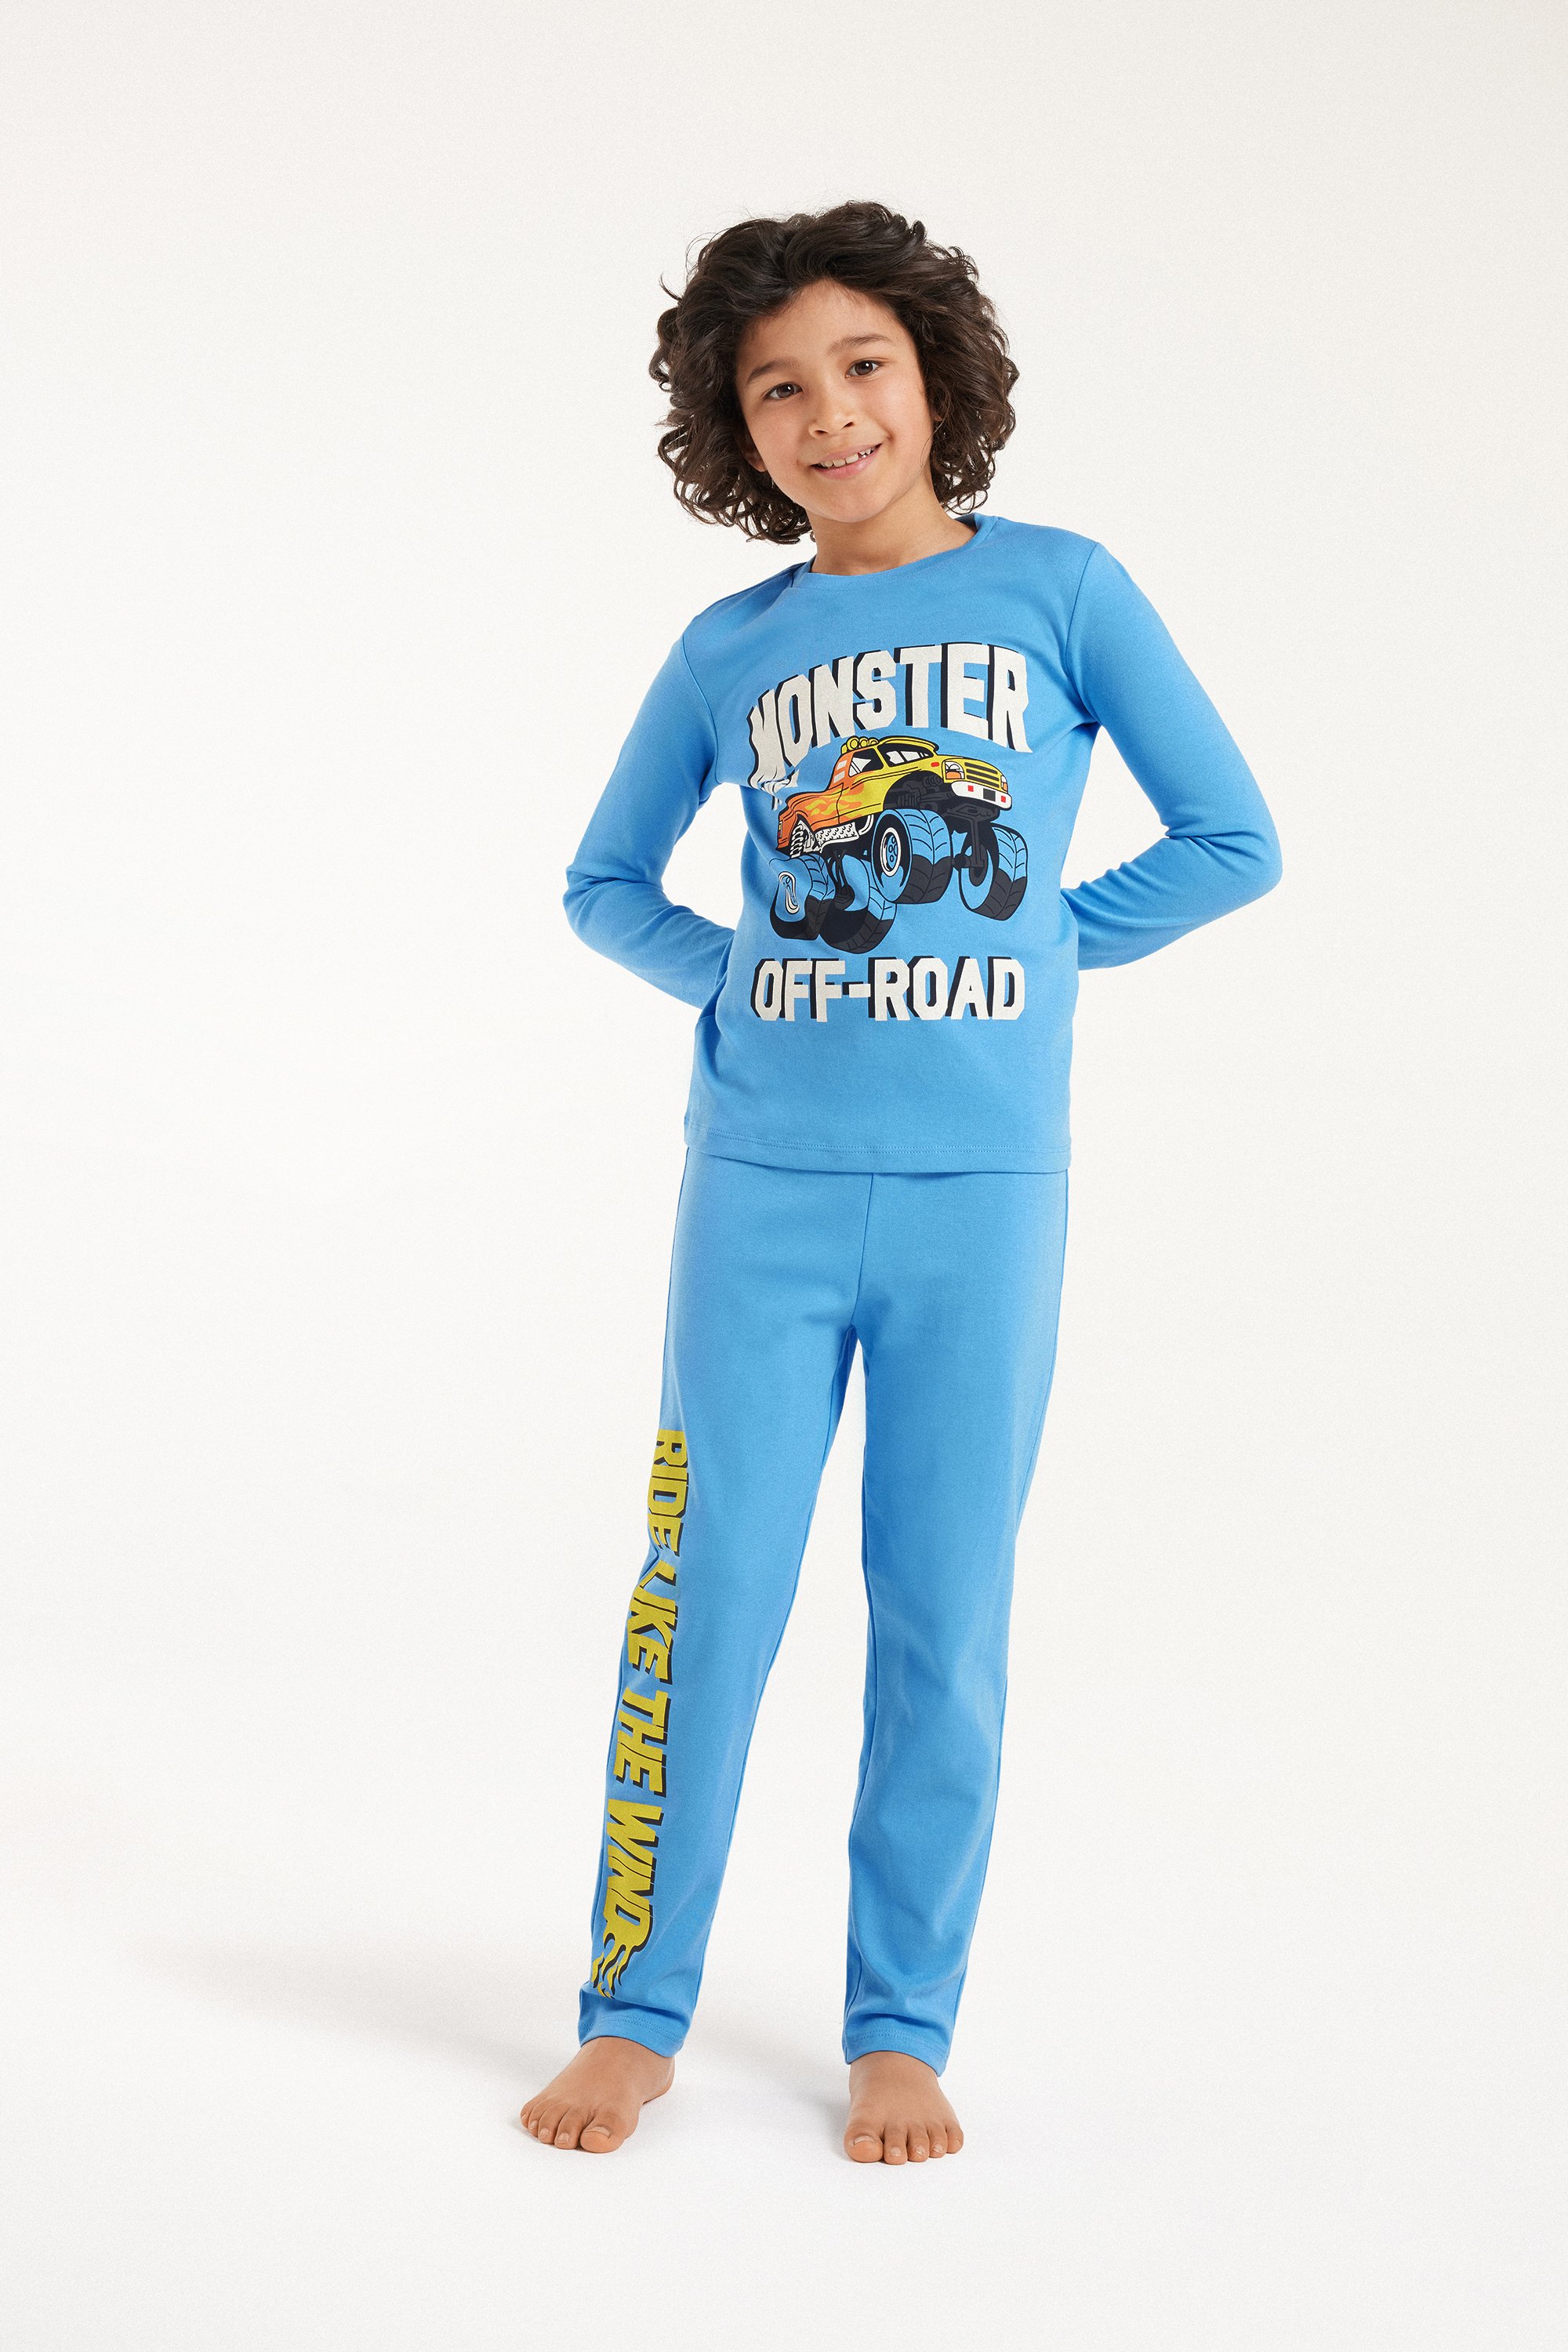 Pijama Largo de Algodón Grueso para Niño con Estampado «Monster»